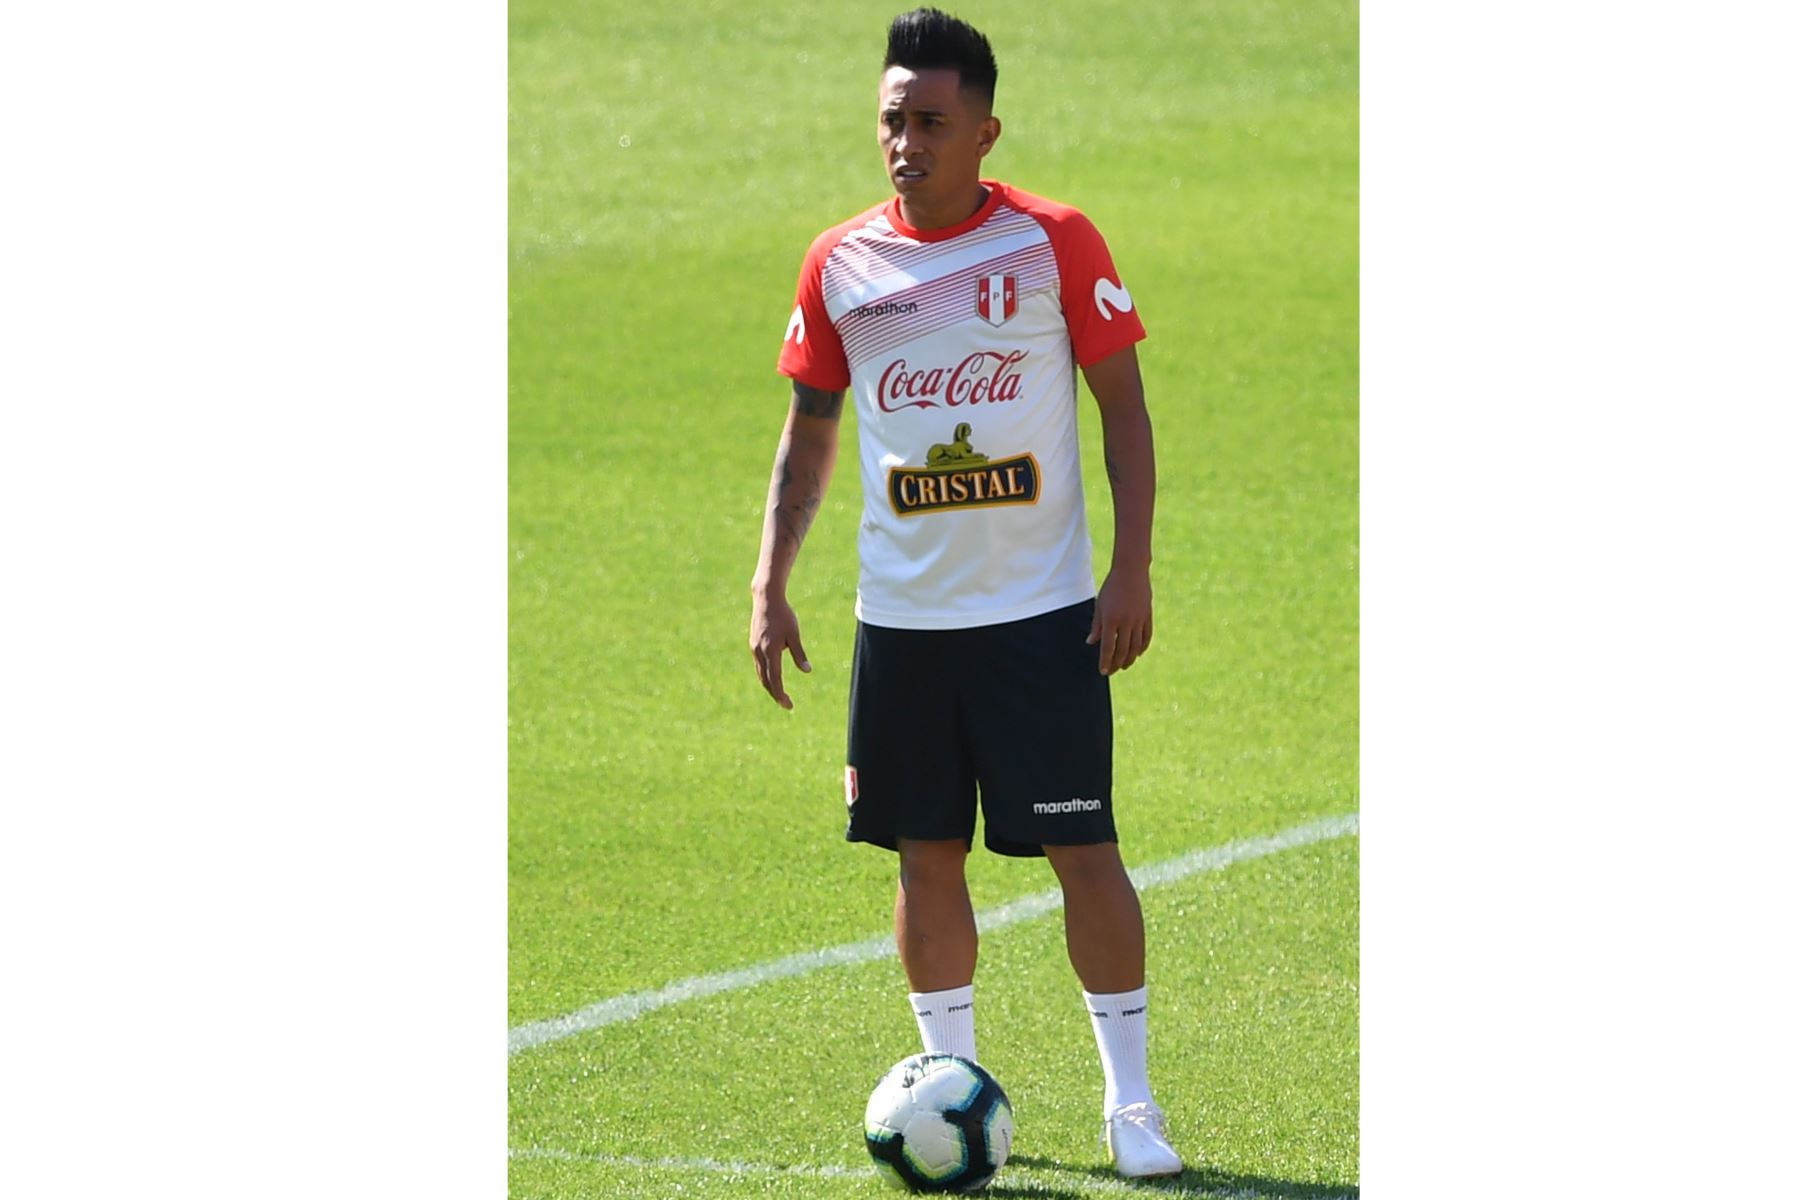 El futbolista Christian Cueva se entrena este jueves en el estadio Pacaembu de São Paulo (Brasil). Perú se enfrenta este sábado a Brasil en un partido por el grupo A de la Copa América. Foto: FPF